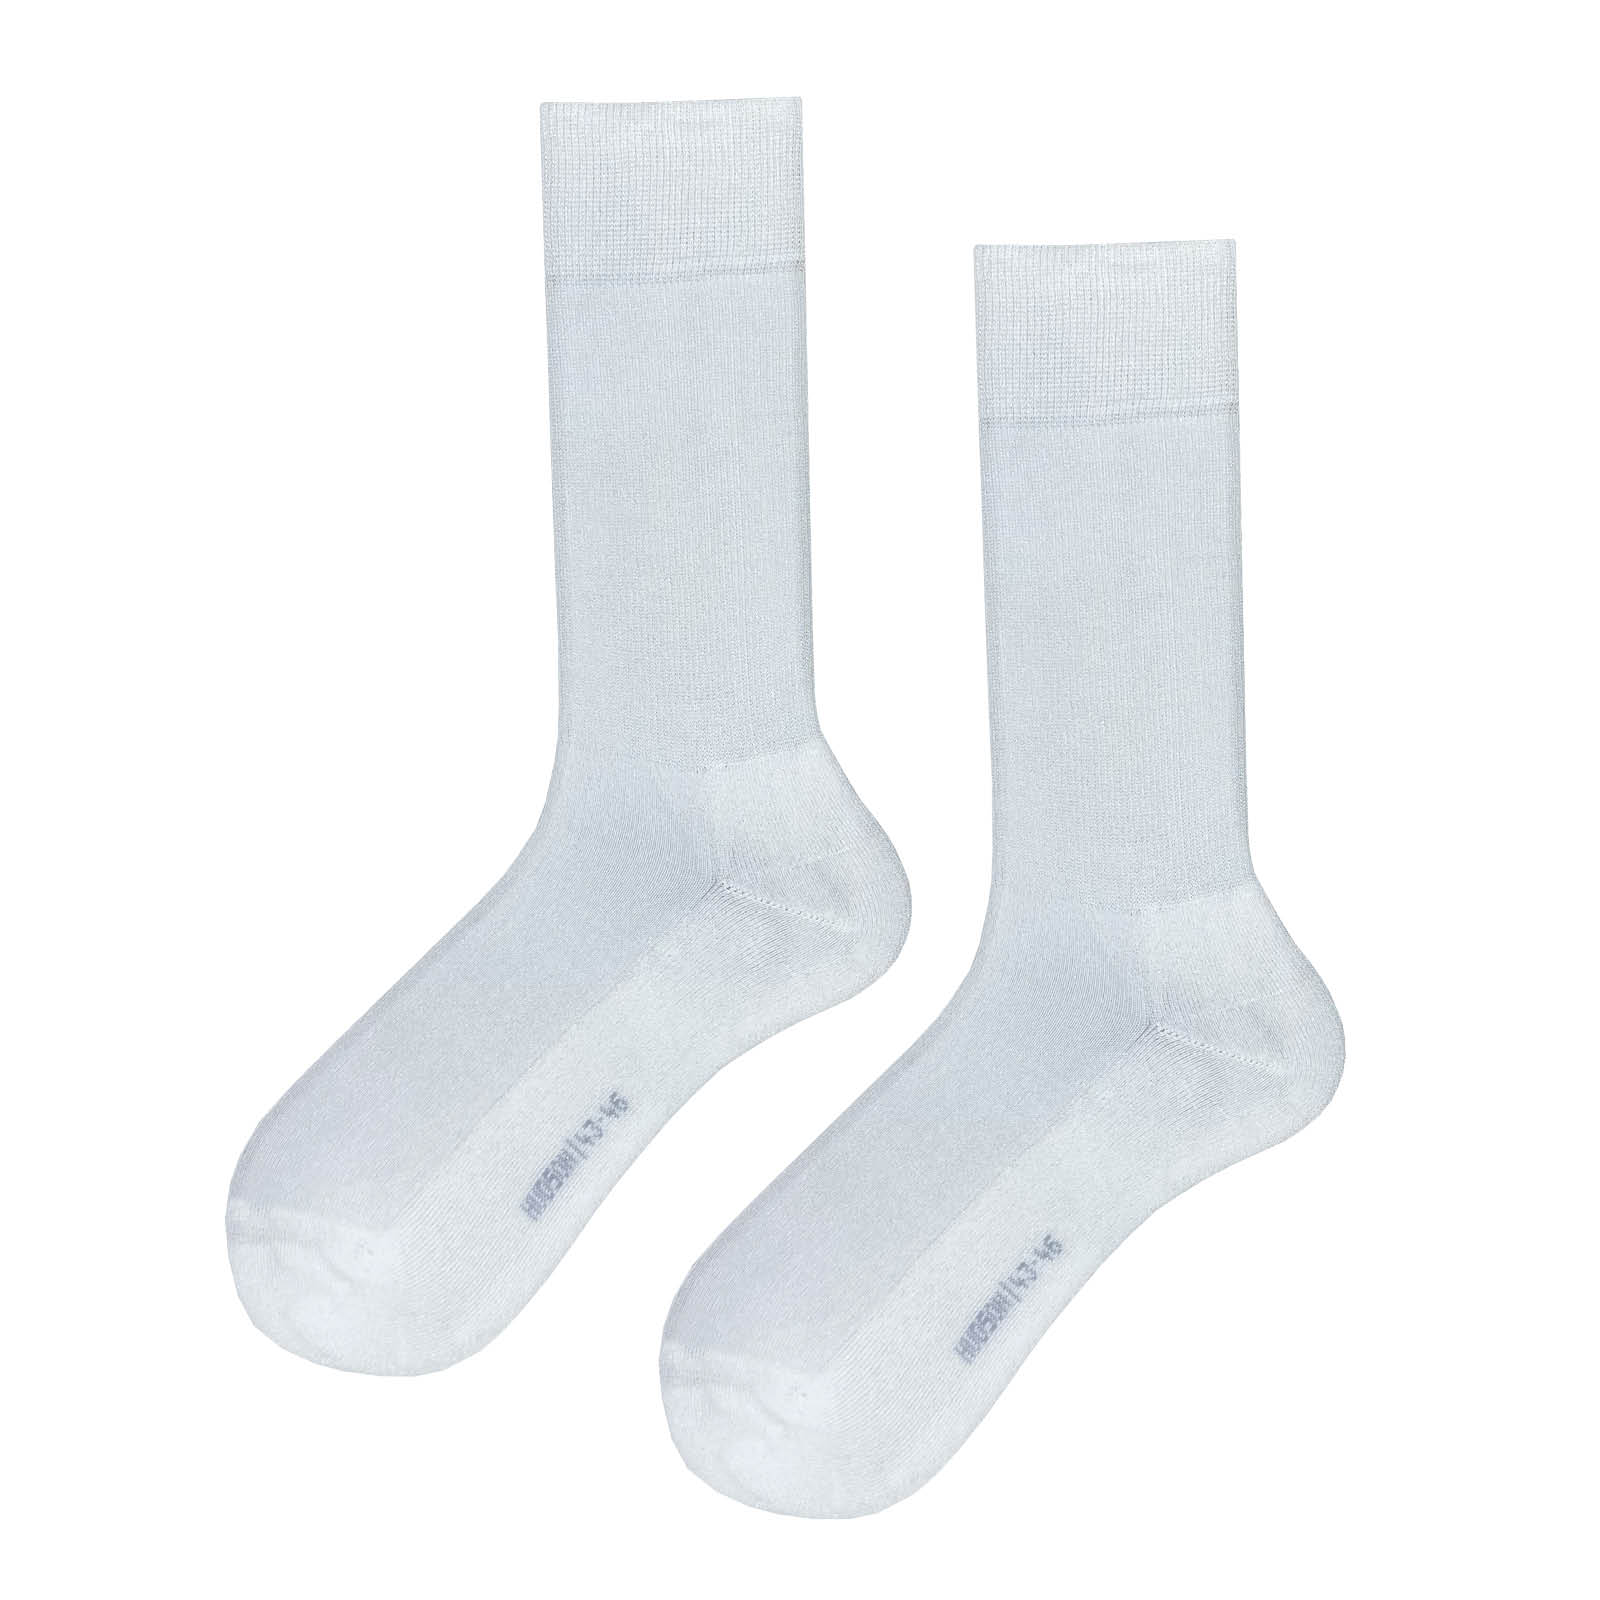 HUDSON Herren ONE FOR ALL -  43/46 - Strapazierfähige Herren Socken mit langer Lebensdauer für alle Trageanlässe - White (Weiß)